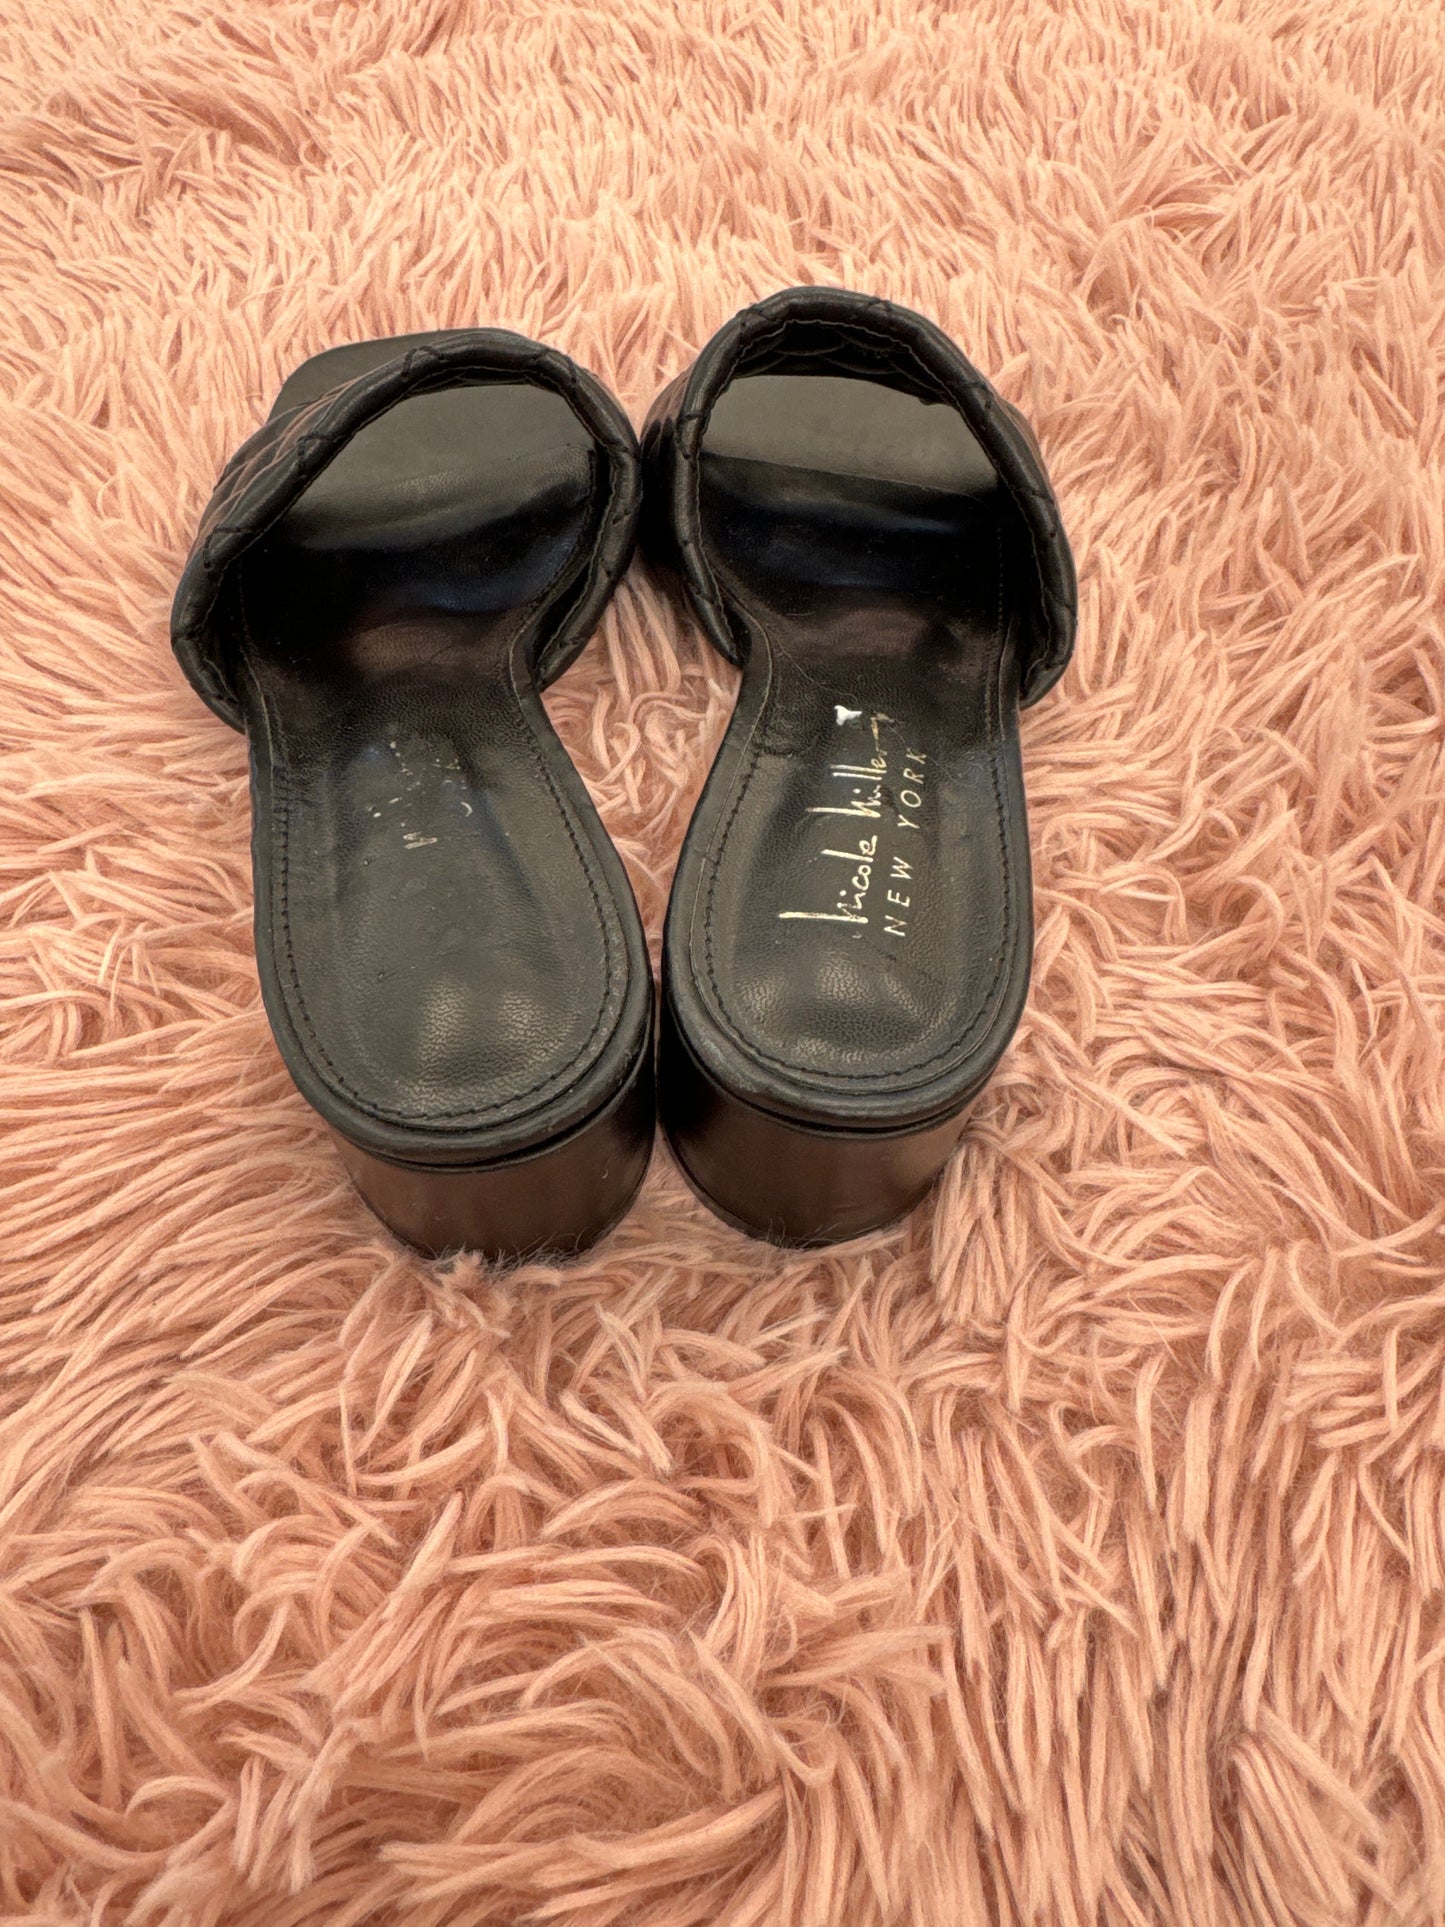 Sandals Heels Block By Nicole Miller  Size: 6